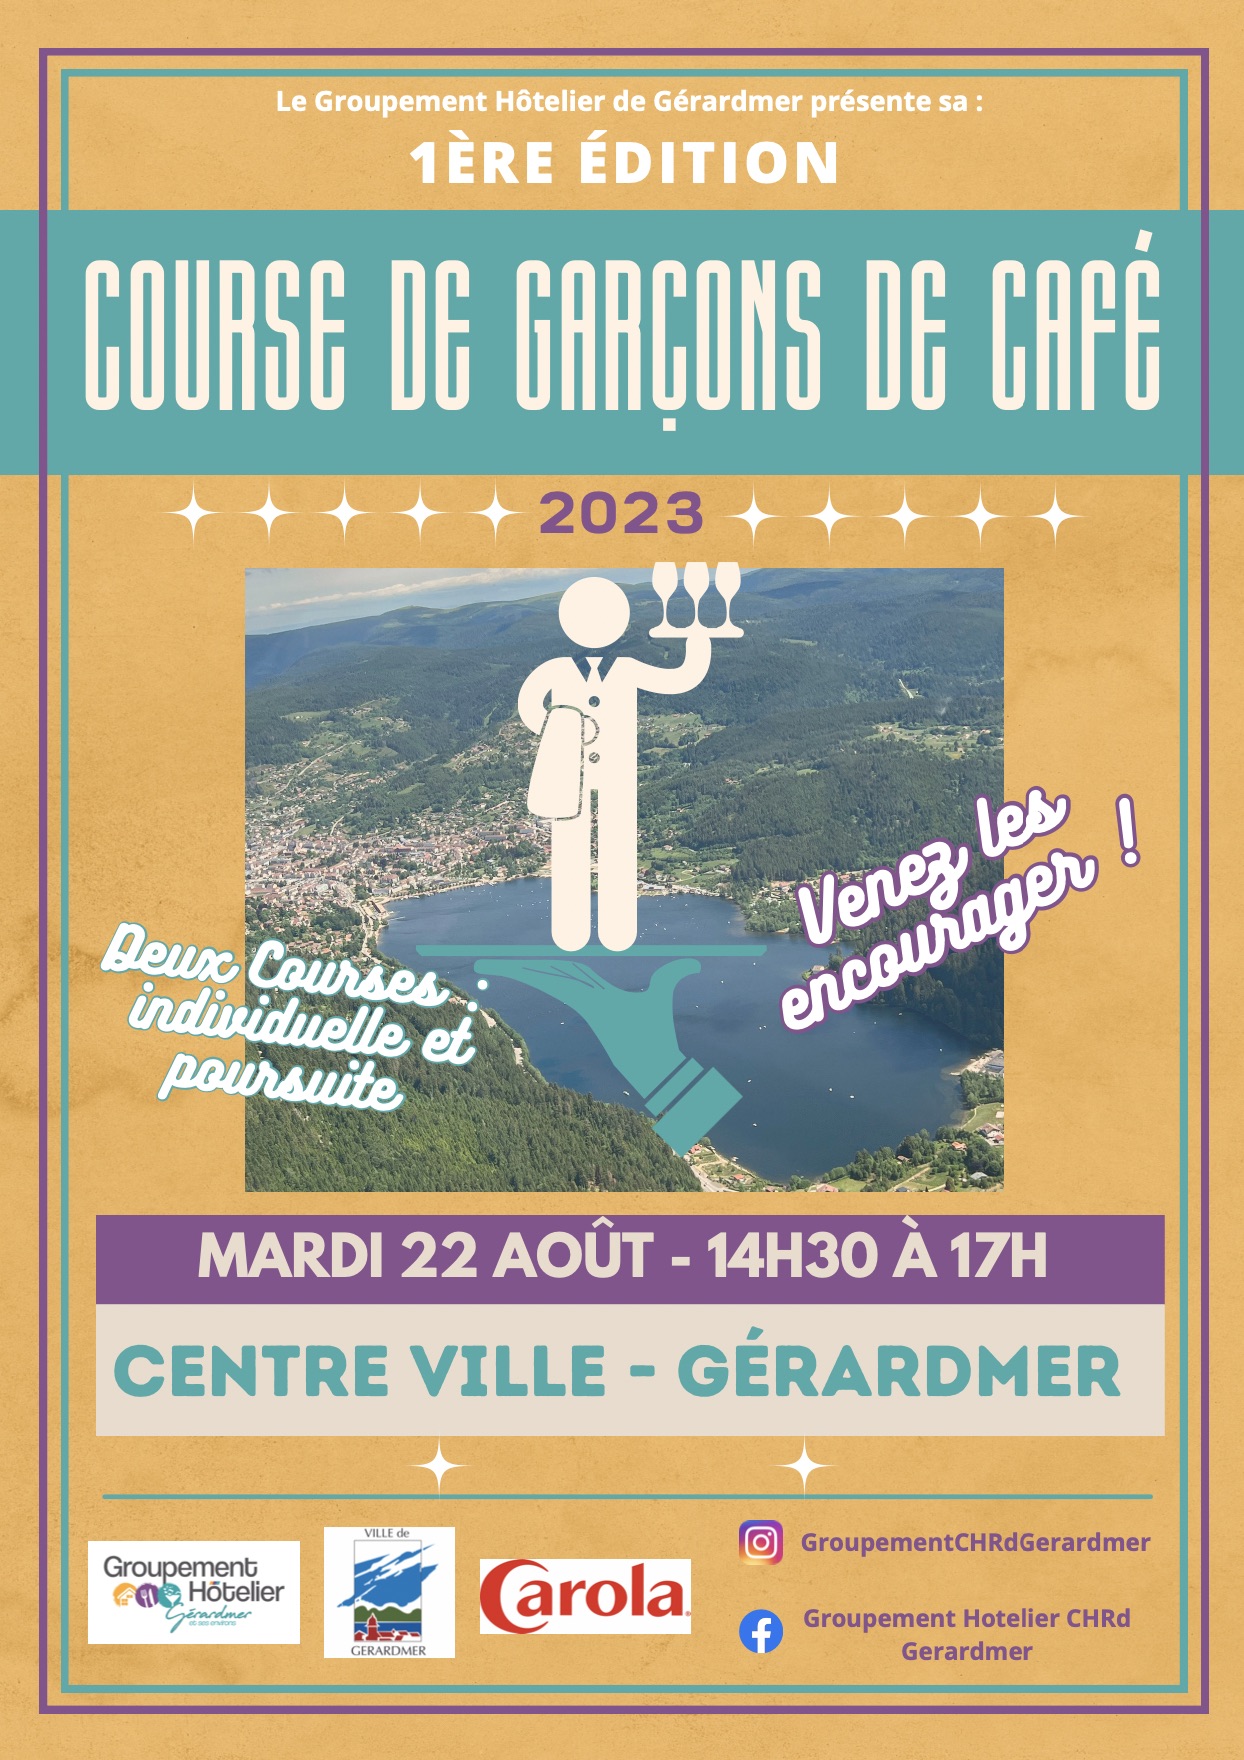 Affiche de la Course de garçons de café de Gérardmer 2023.